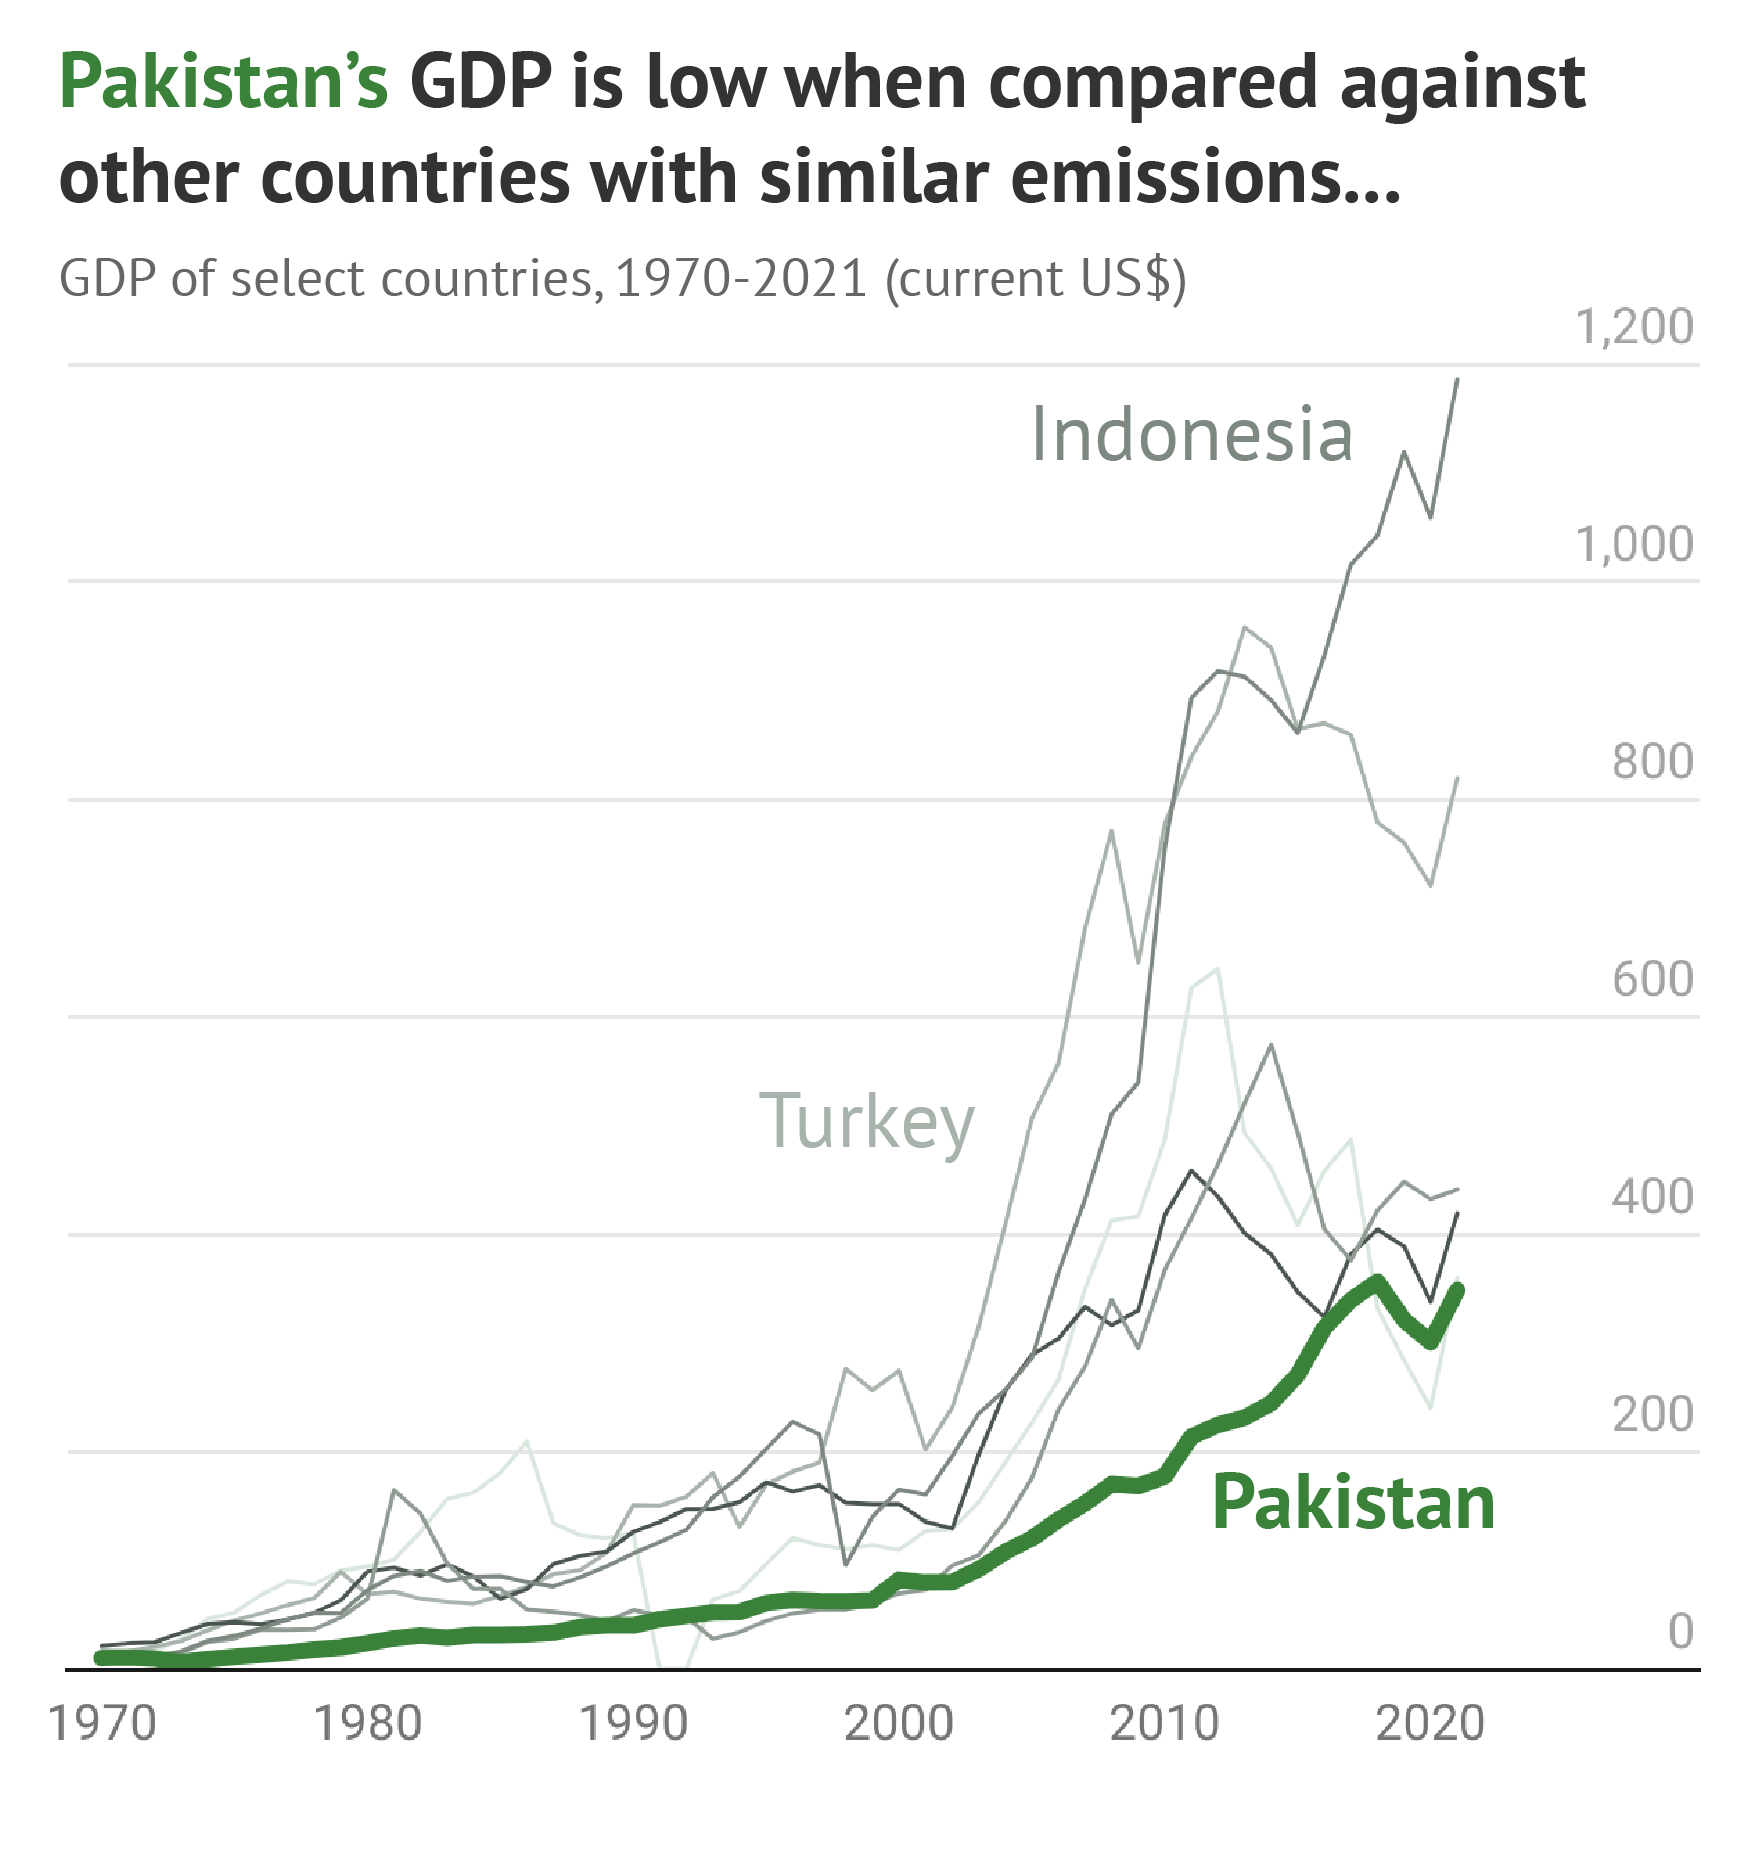 Benzer emisyonlara sahip diğer ülkelerle karşılaştırıldığında Pakistan'ın GSYİH'sının düşük olduğunu gösteren grafik.